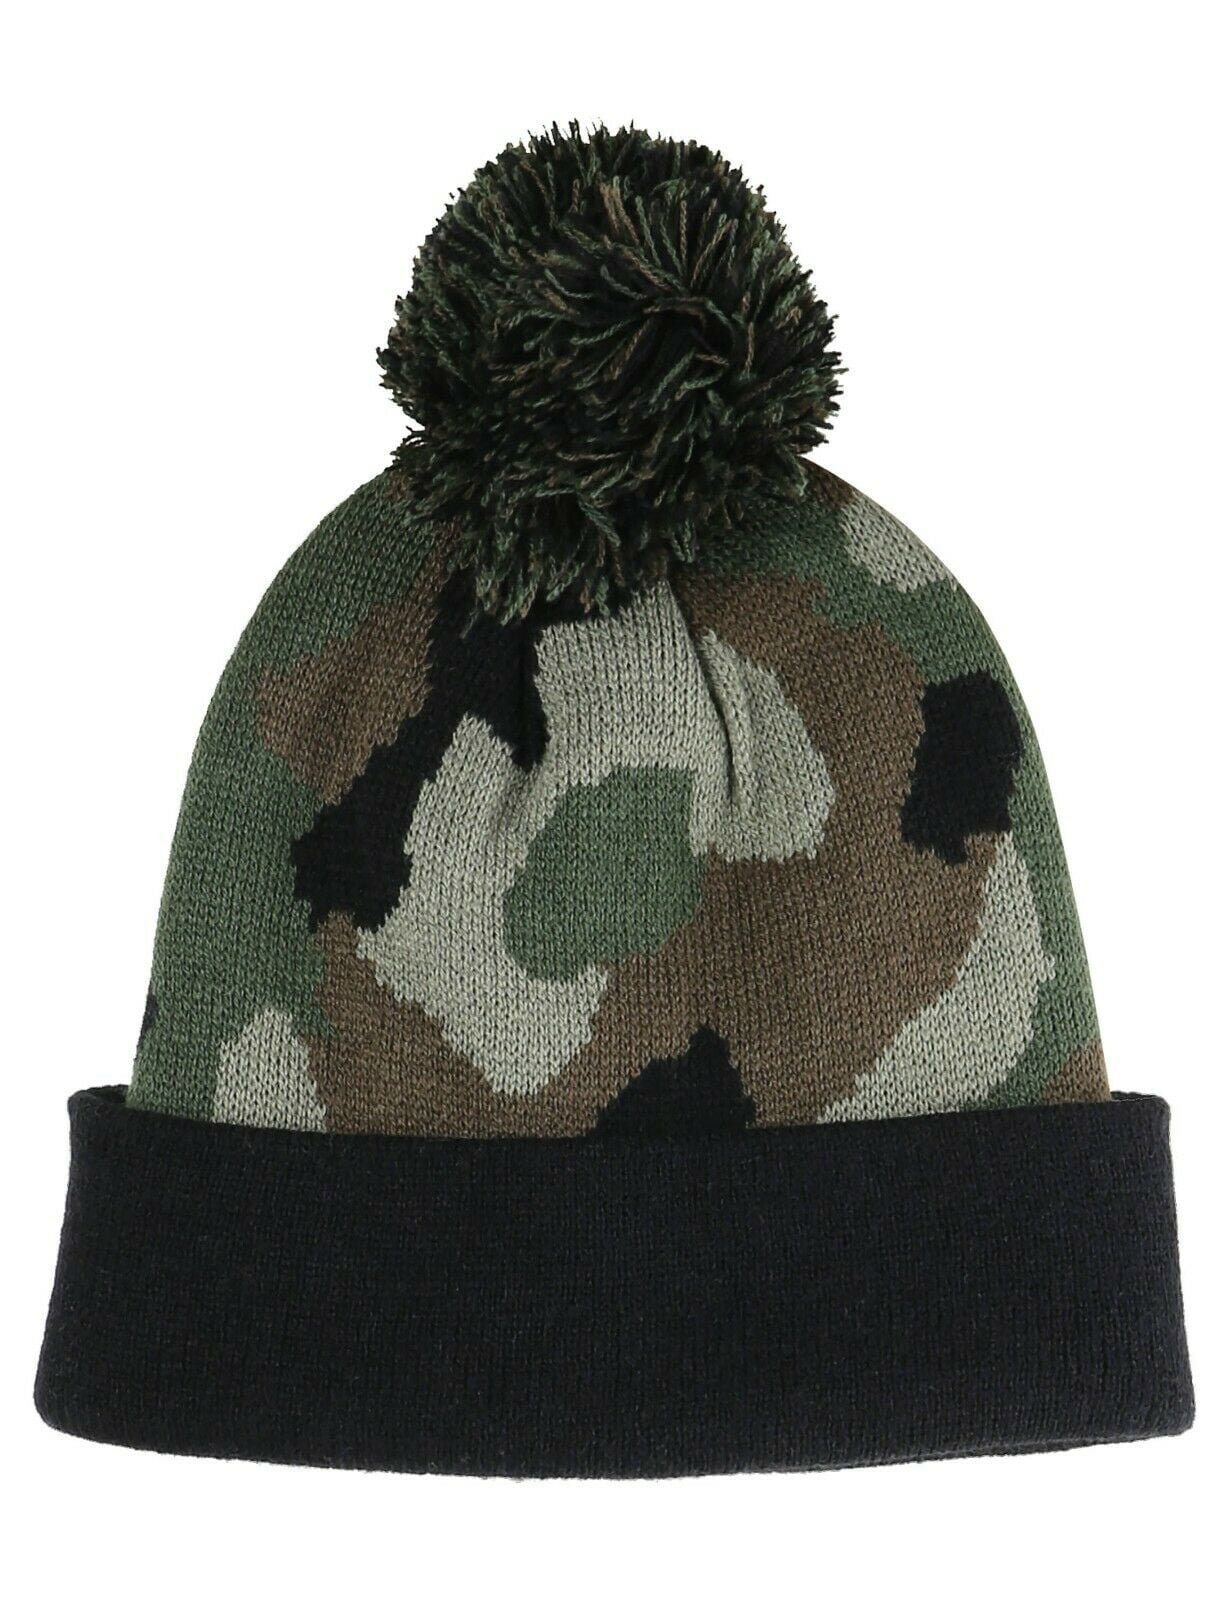 Beanie Plain Knit Ski Hat Skull Cap Cuff Warm Winter Blank Colors ...